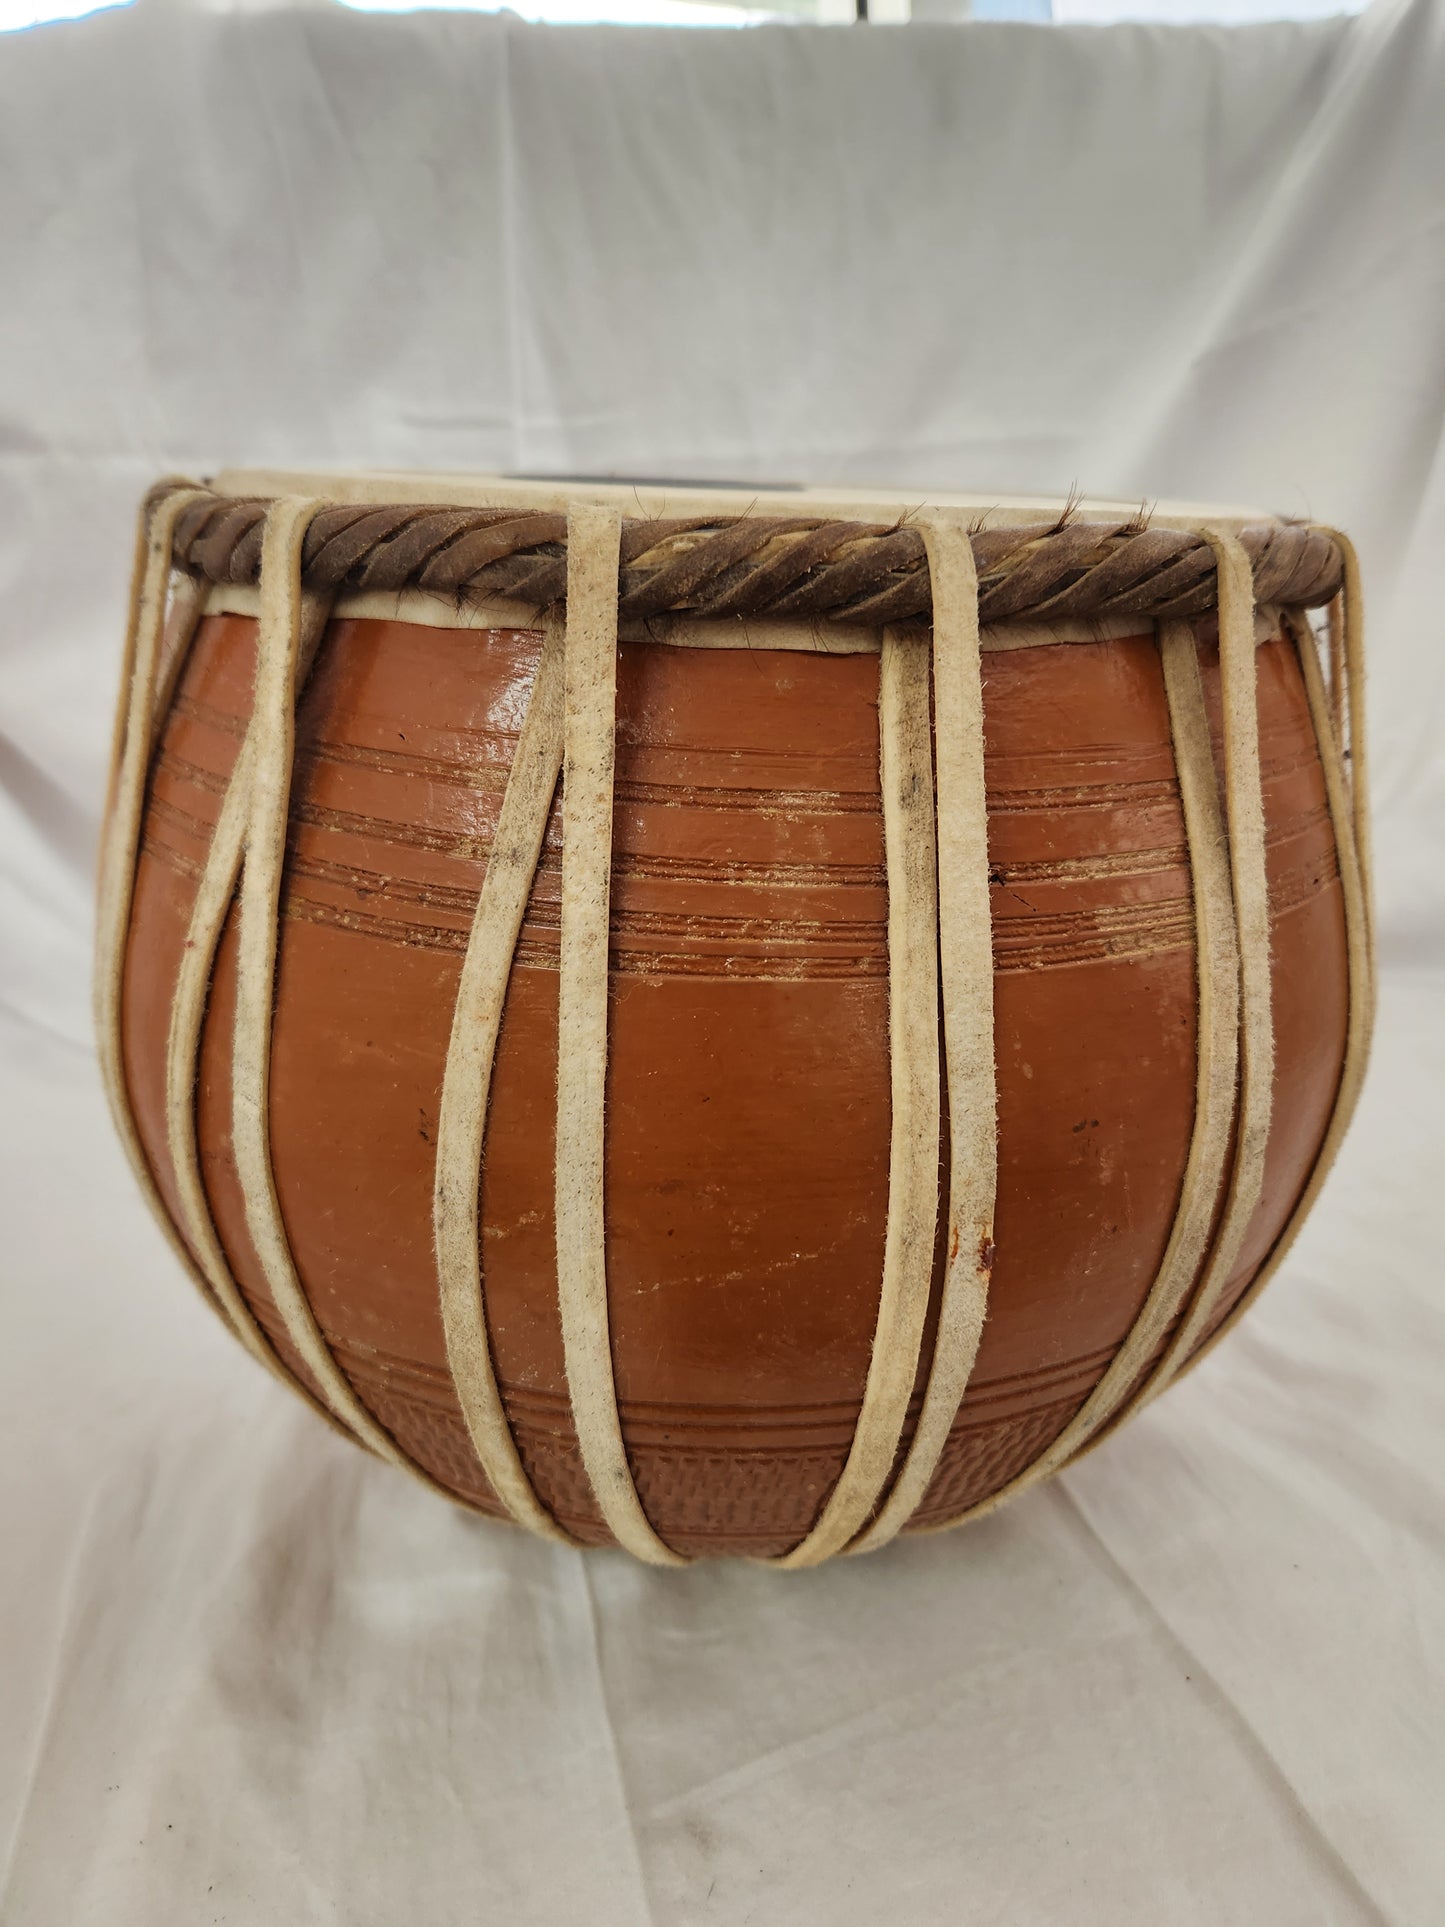 Handmade 9" Ceramic Baul Drum